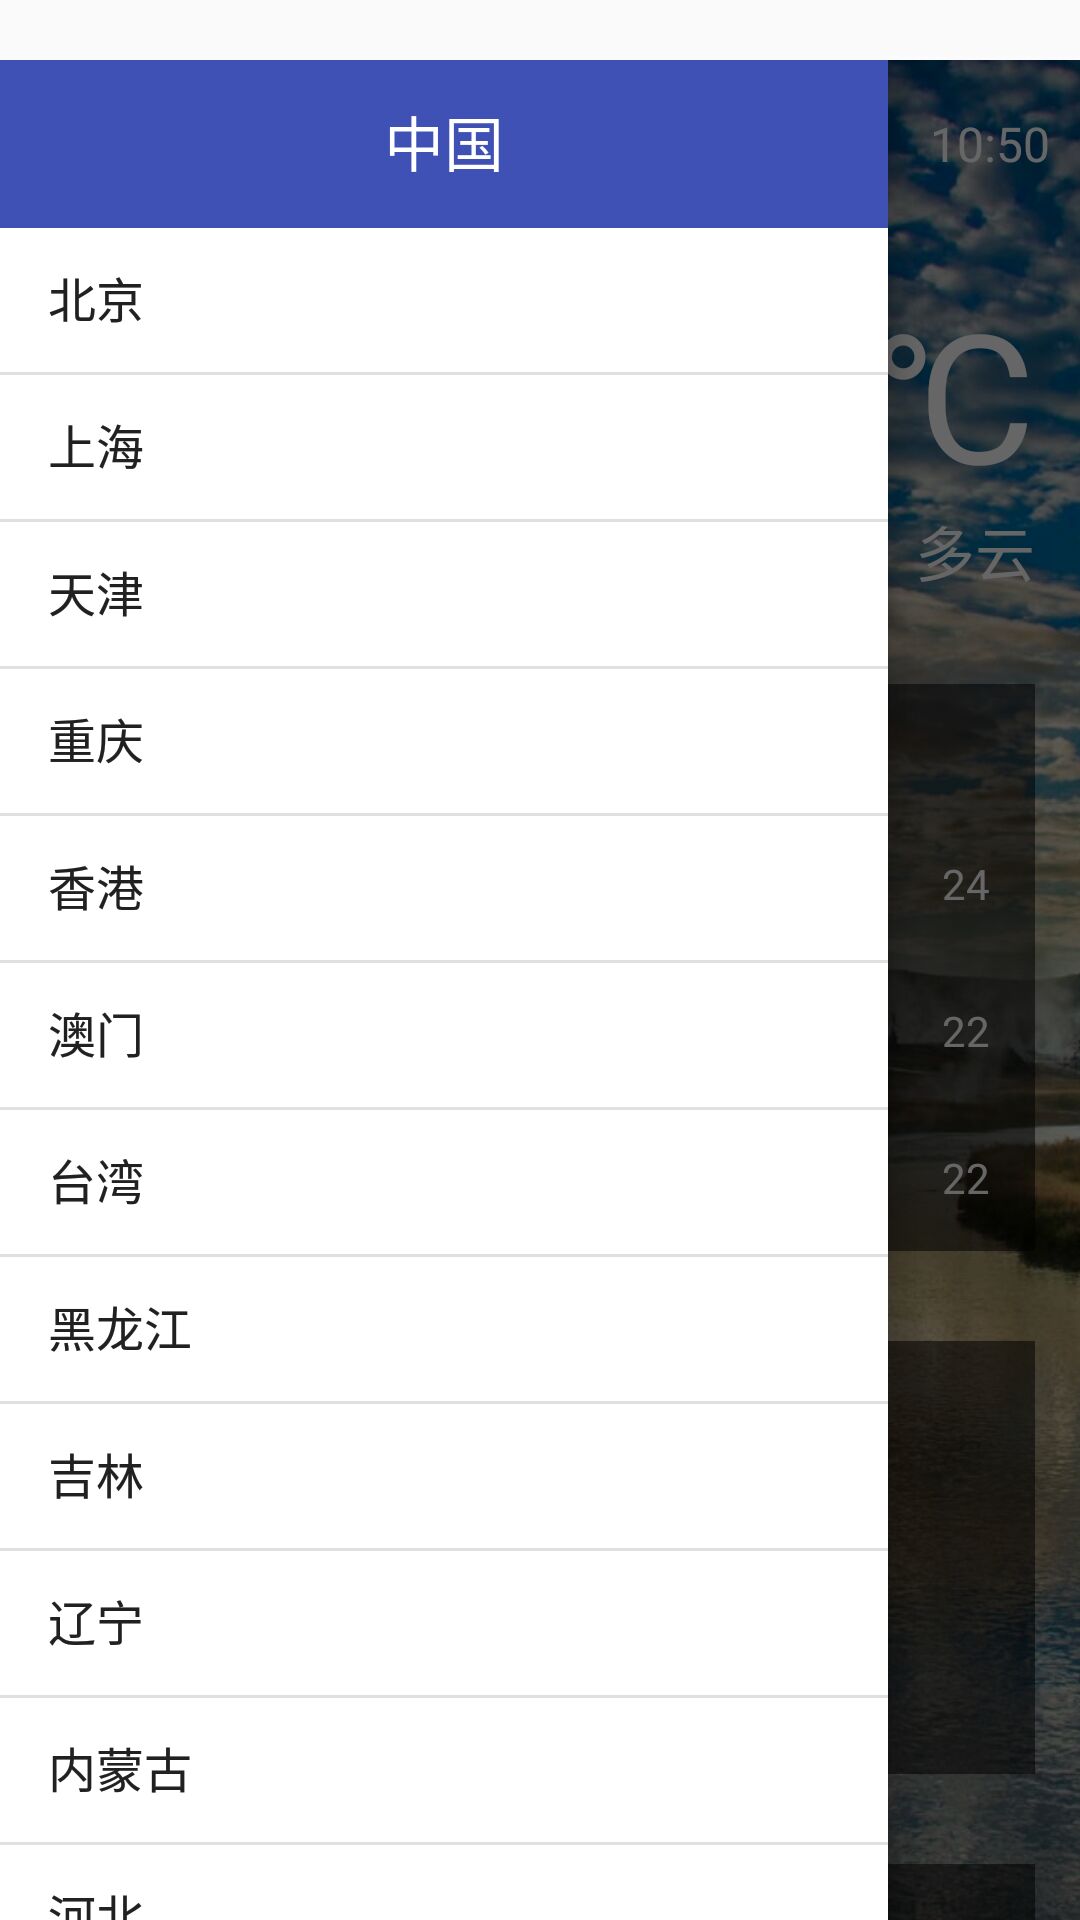 磨叽天气app软件下载官方版 v0.3.3截图